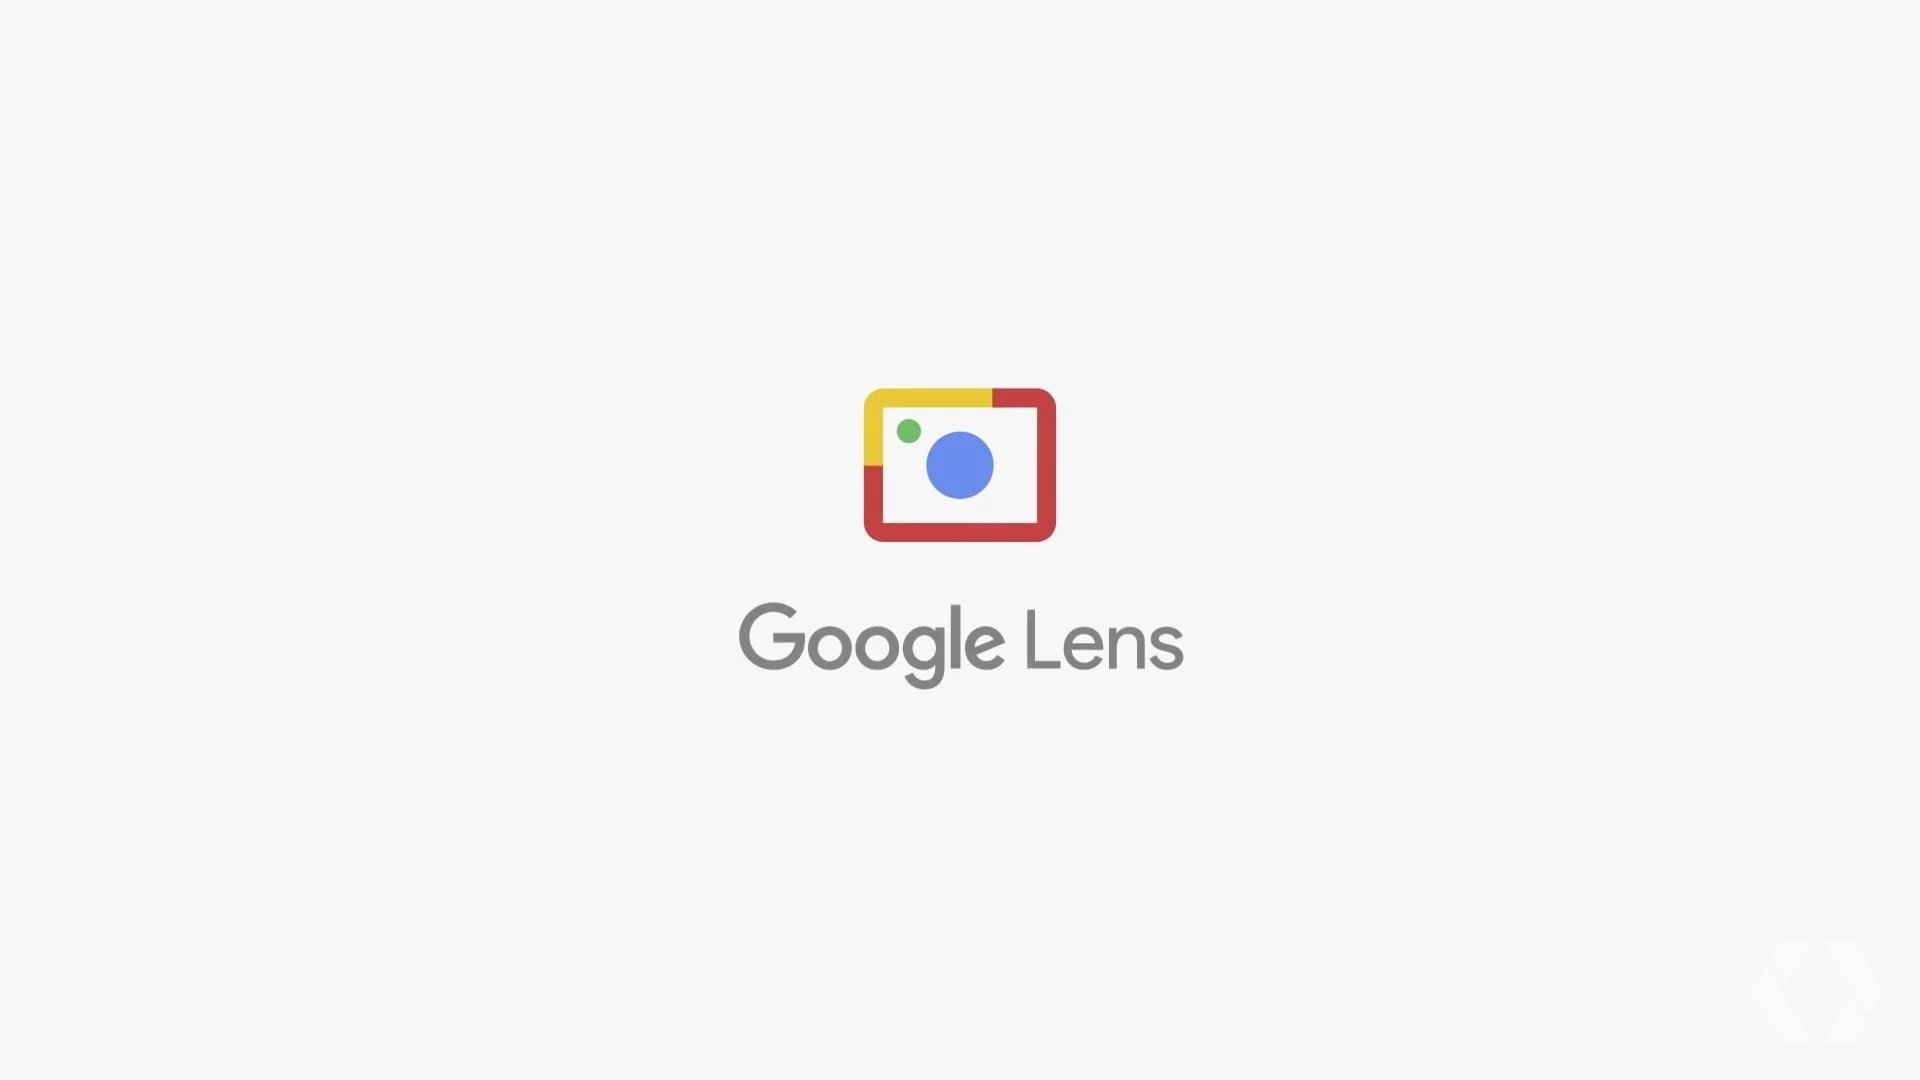 Google Lens